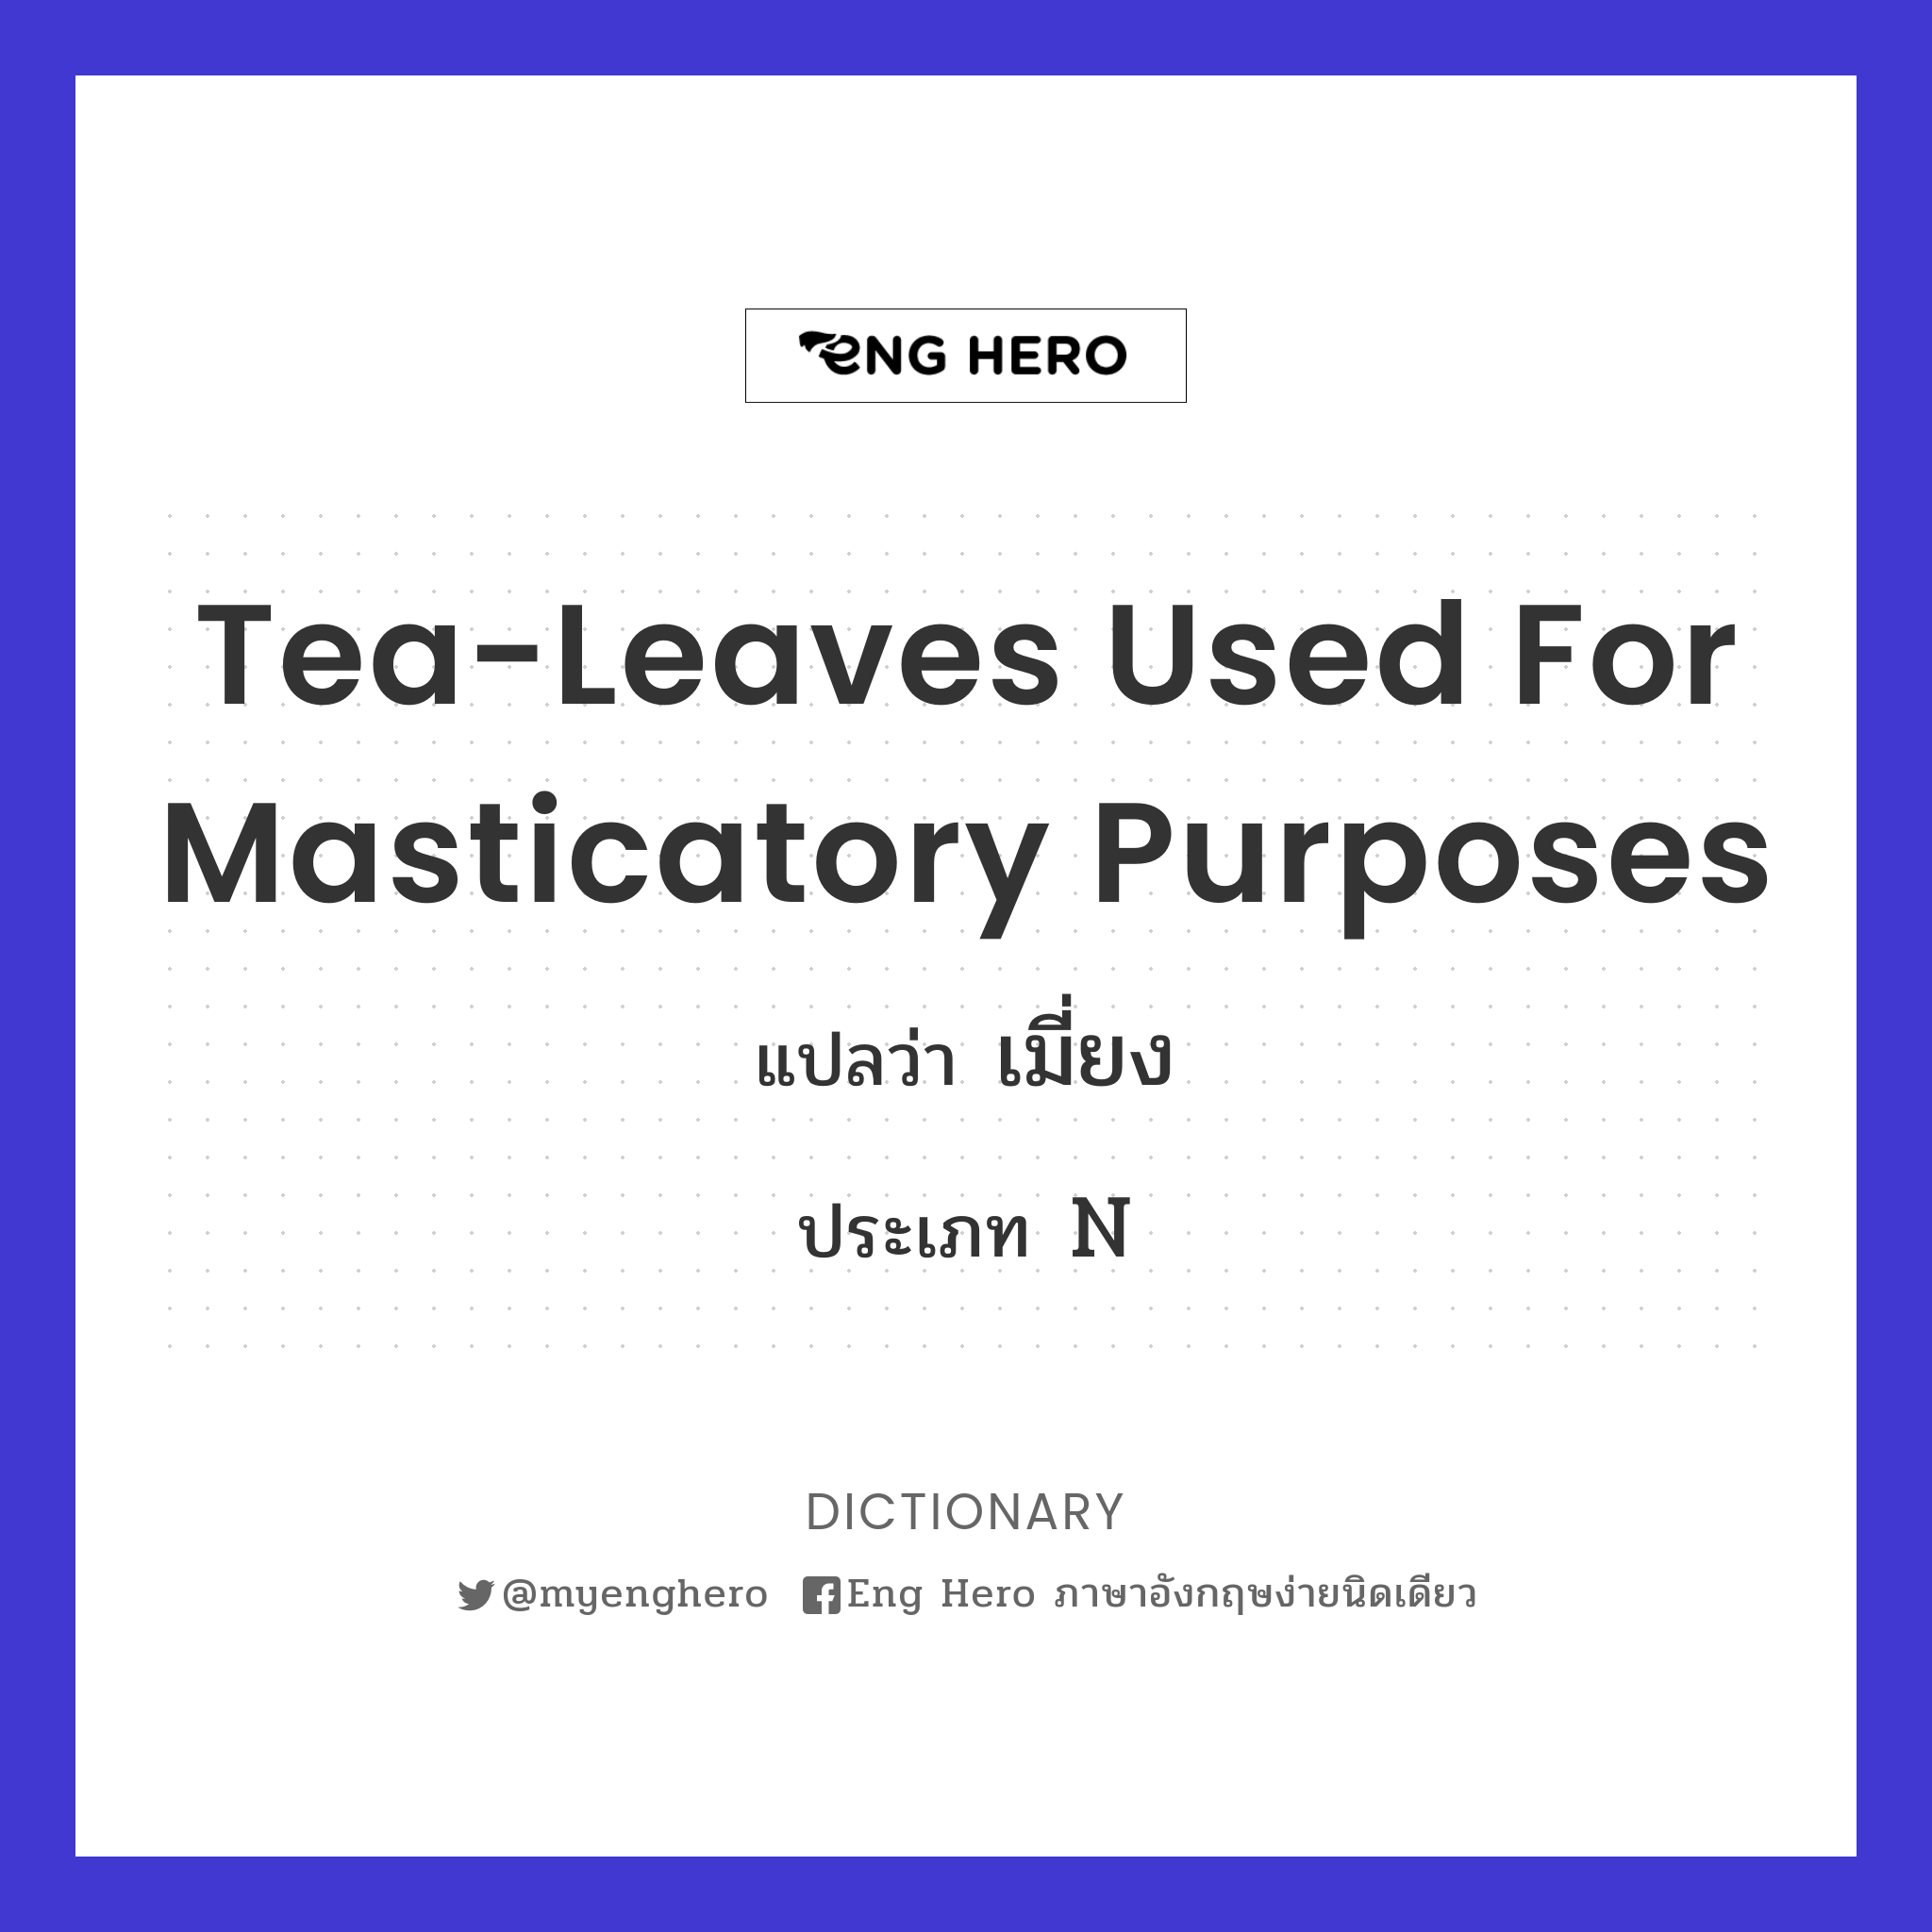 tea-leaves used for masticatory purposes